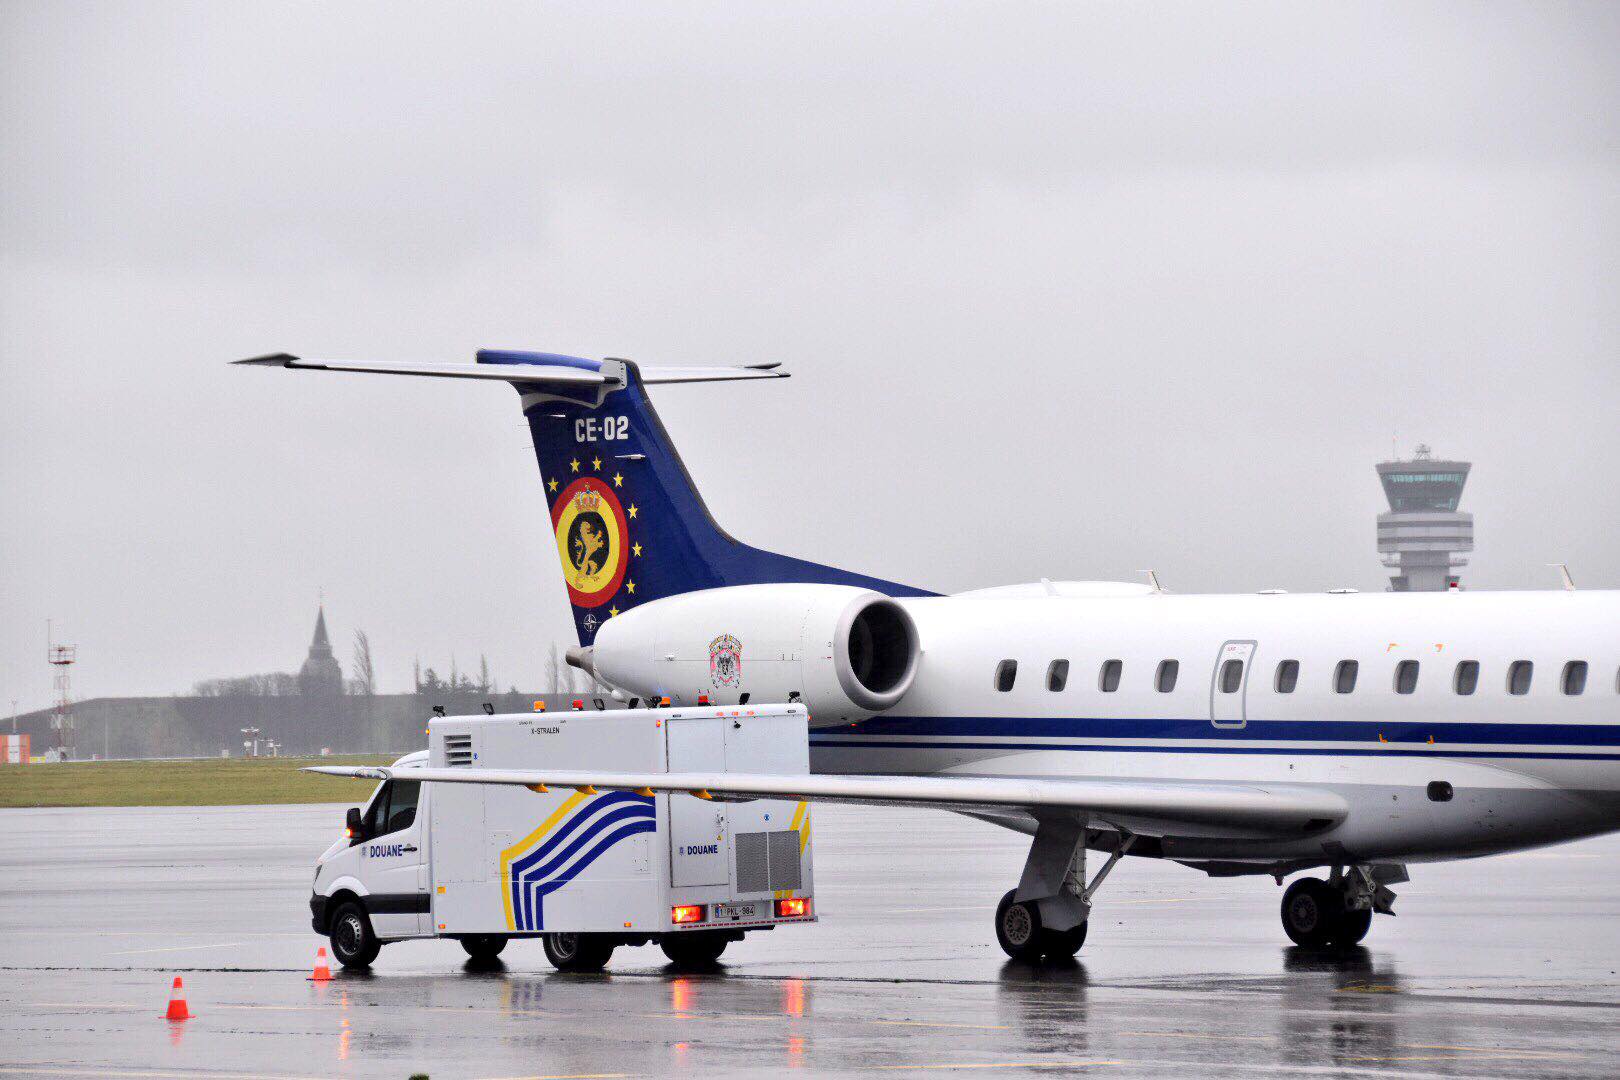 Les Douanes inaugurent un véhicule pour scanner les avions à Brussels Airport 24068511